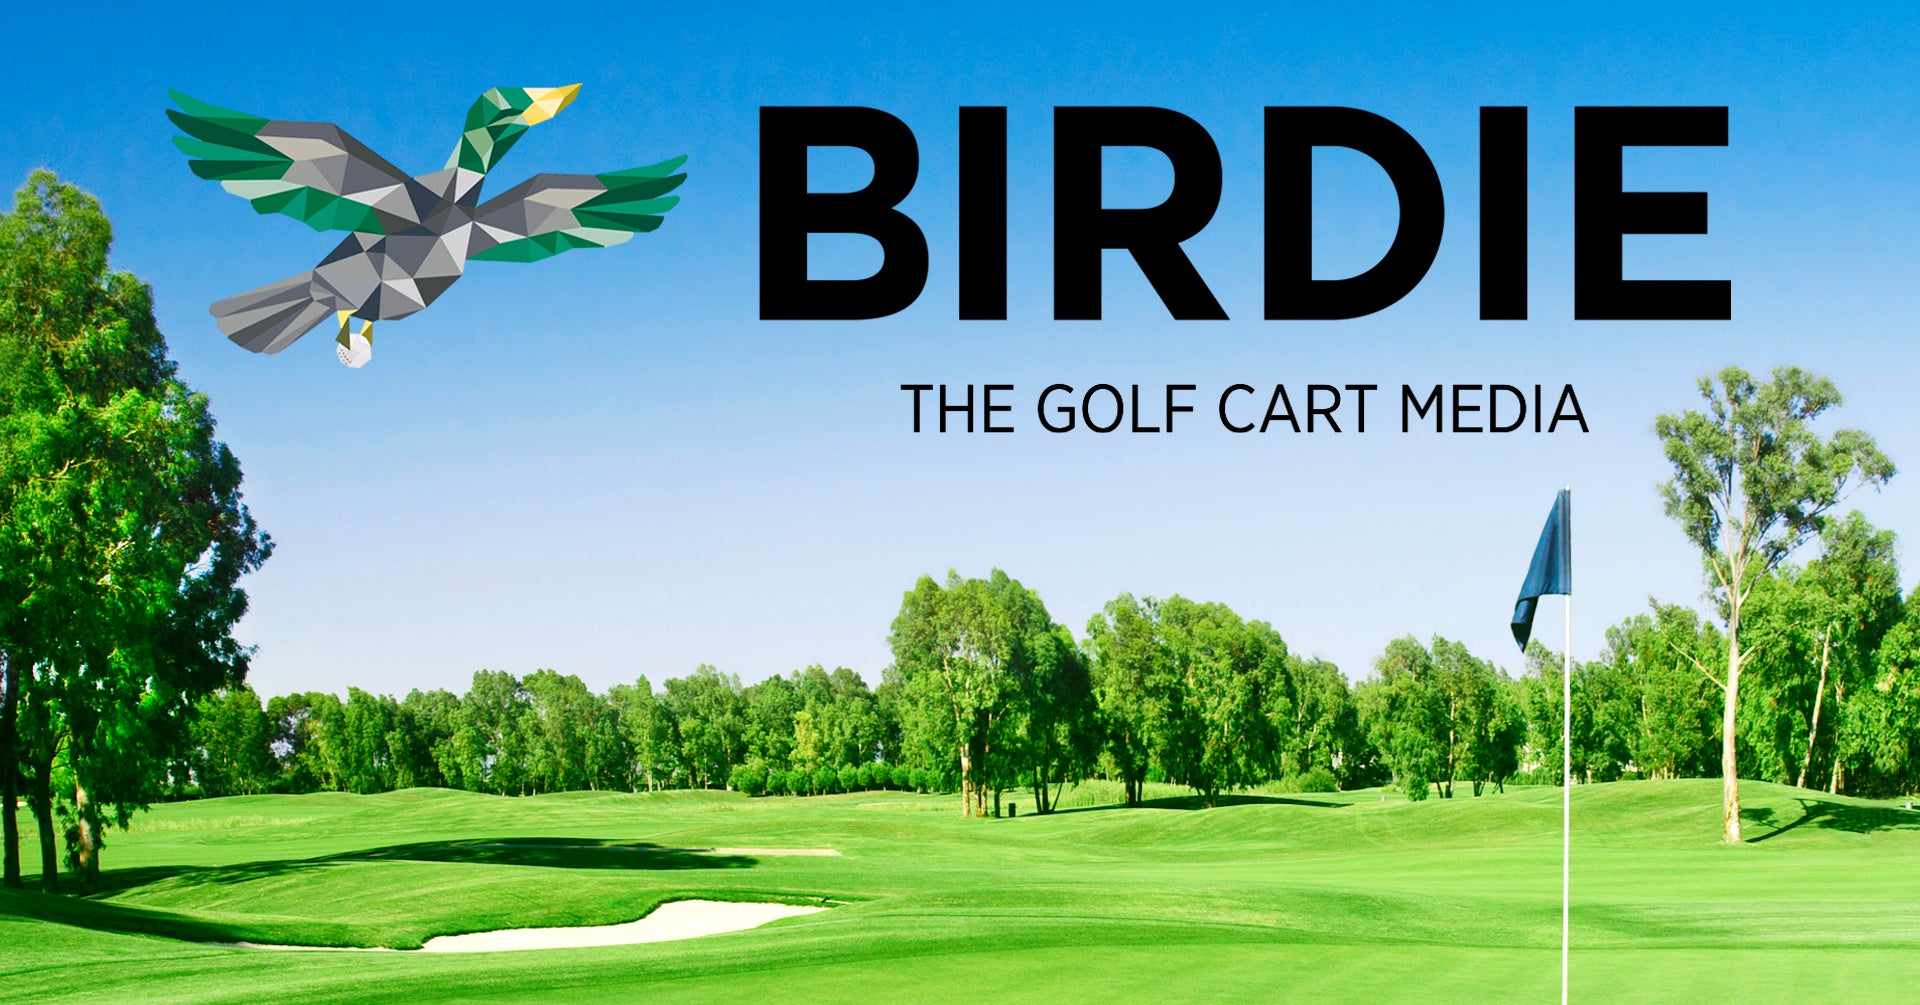 ニューステクノロジー、全国320コースで展開するアイシグリーンシステムと提携し、ゴルフカートサイネージ広告事業「BIRDIE」を開始のサブ画像1